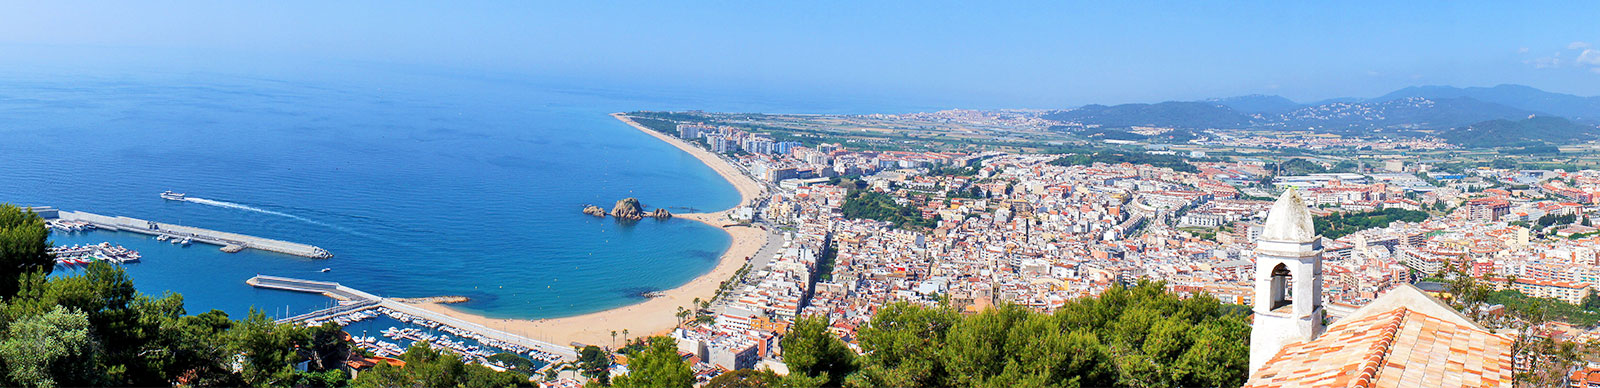 Spain coast line